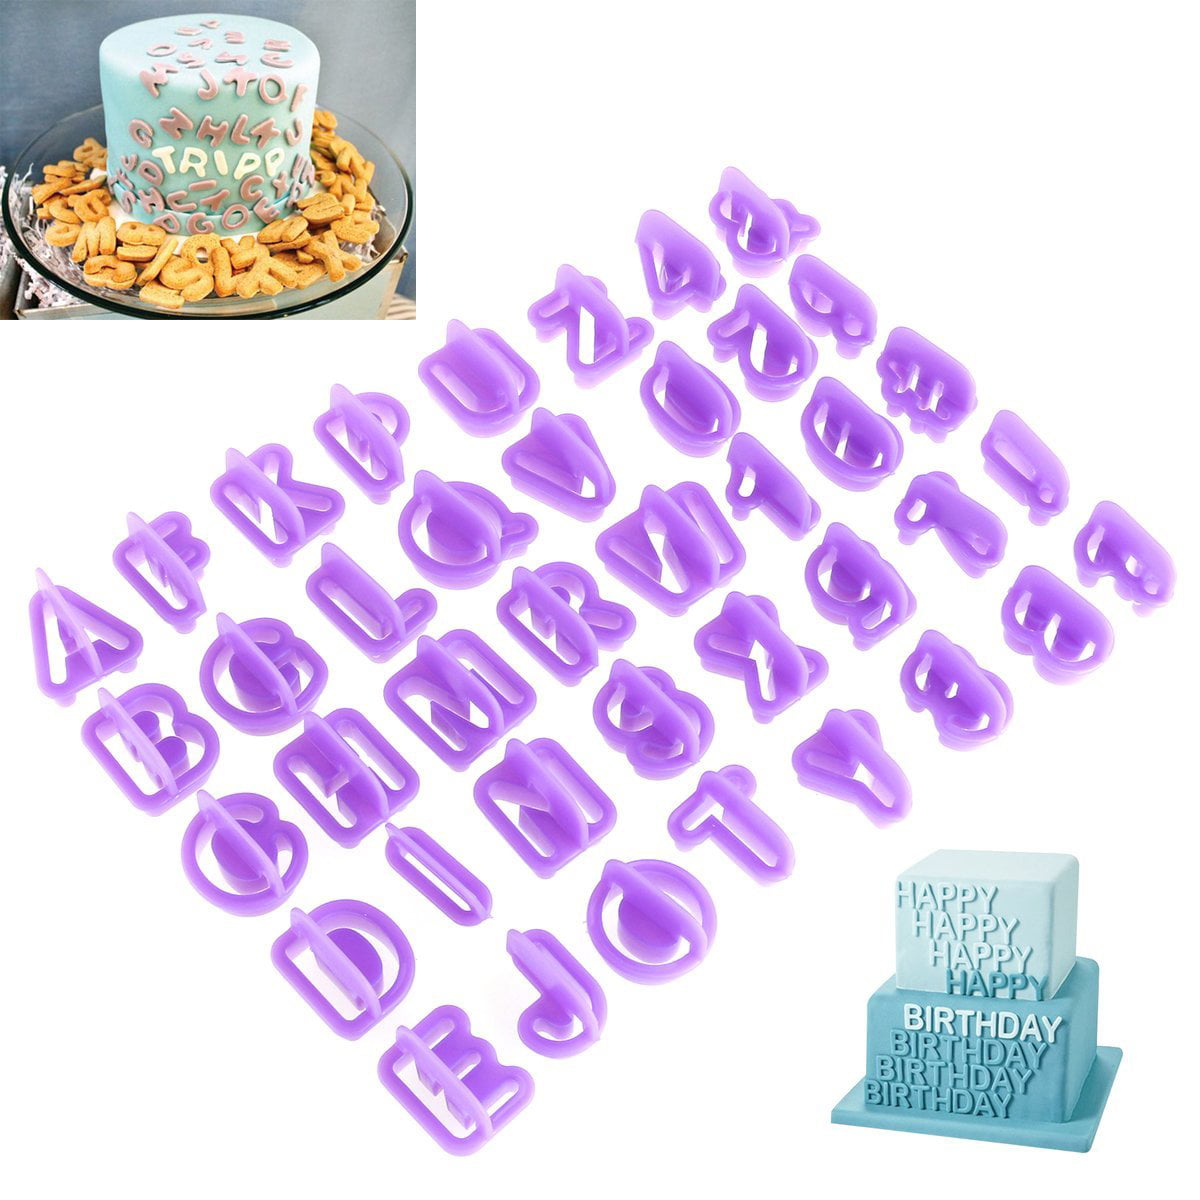 40pcs Alphabet Numéro Lettre Fondant Gâteau Décoration ensemble Icing Cutter Mold Mould